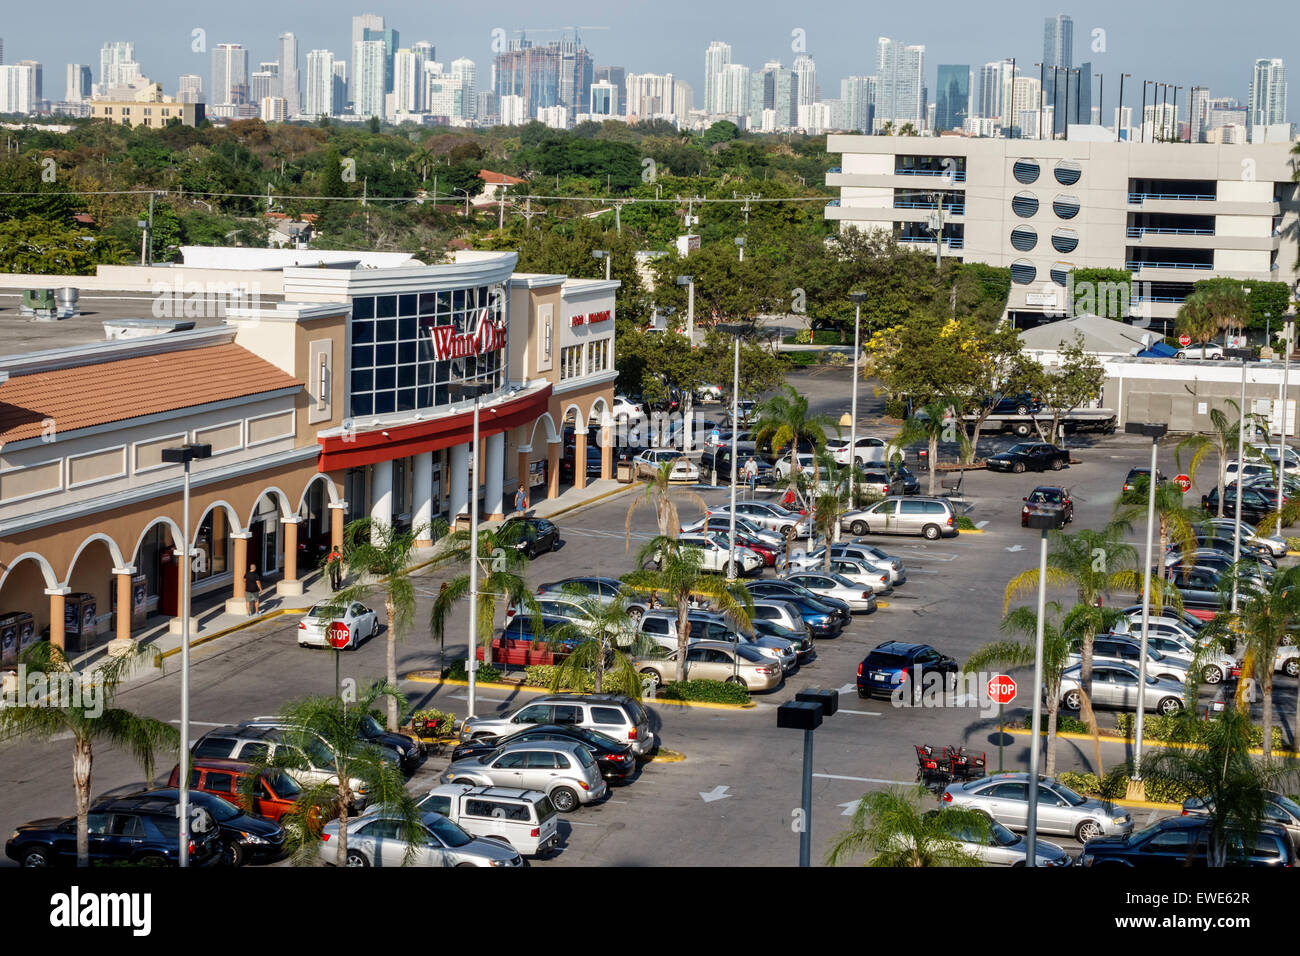 Miami Florida, SW 22nd Street, Coral Way, Luftaufnahme von oben, Winn-Supermarkt, Supermarkt, Vorderseite, Eingang Parkplatz, Parkplatz für Autos, Stadt sk Stockfoto